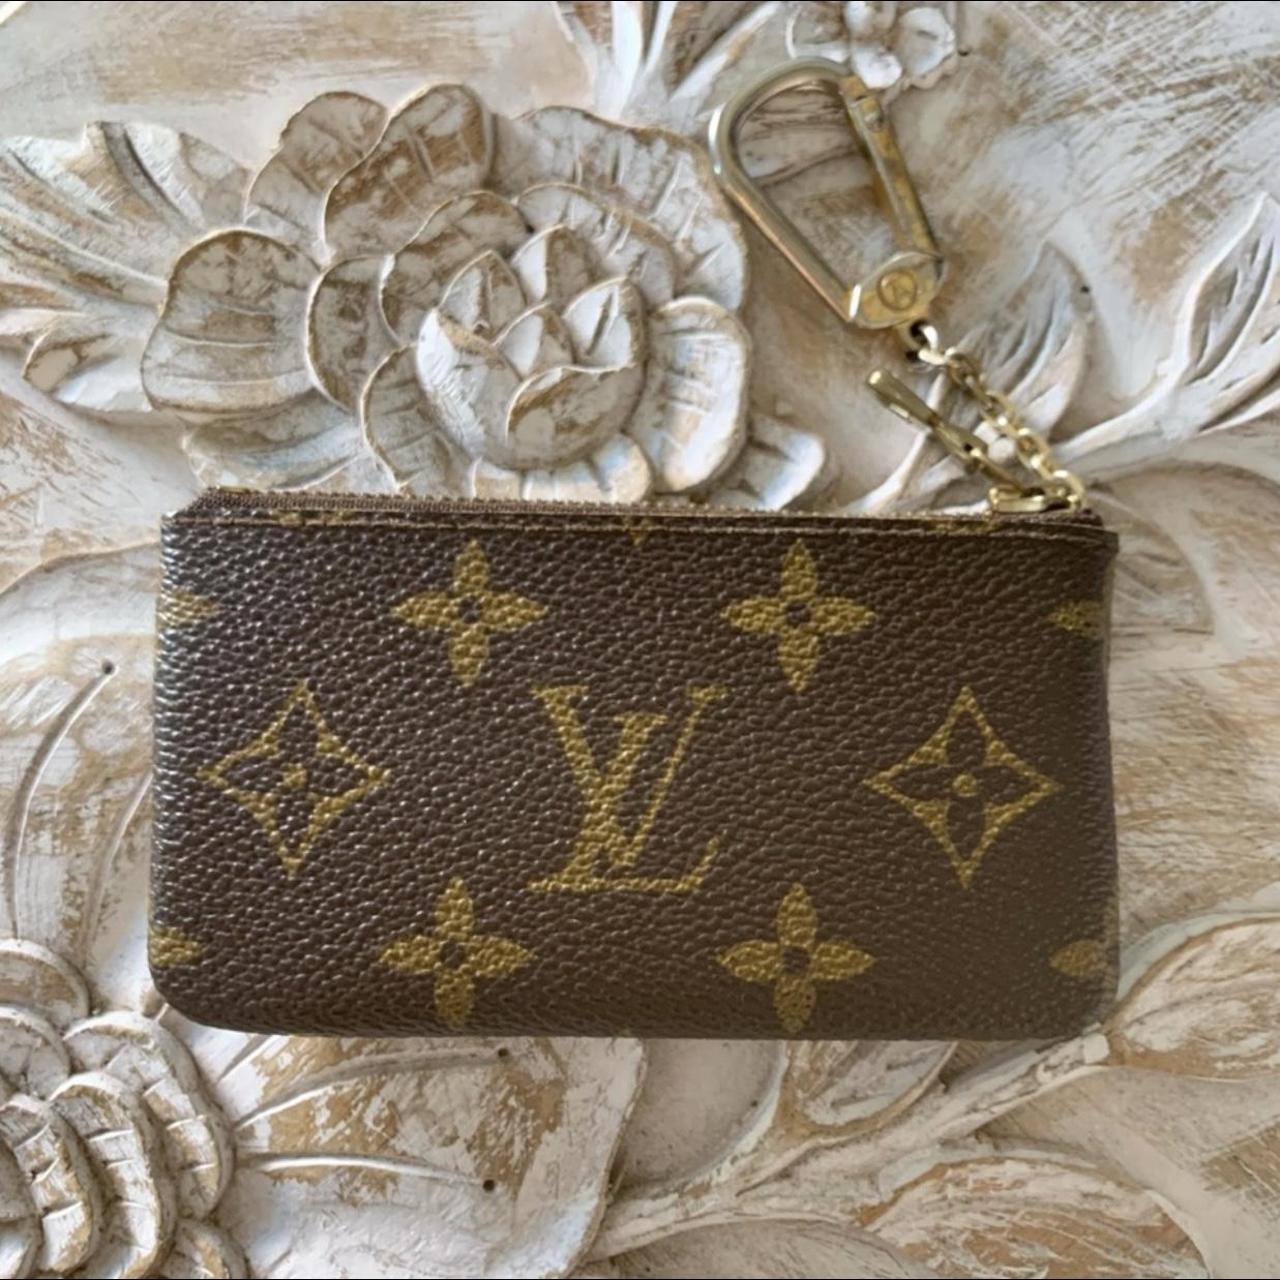 Louis Vuitton Key Pouch in Damier Ebene Gold - Depop